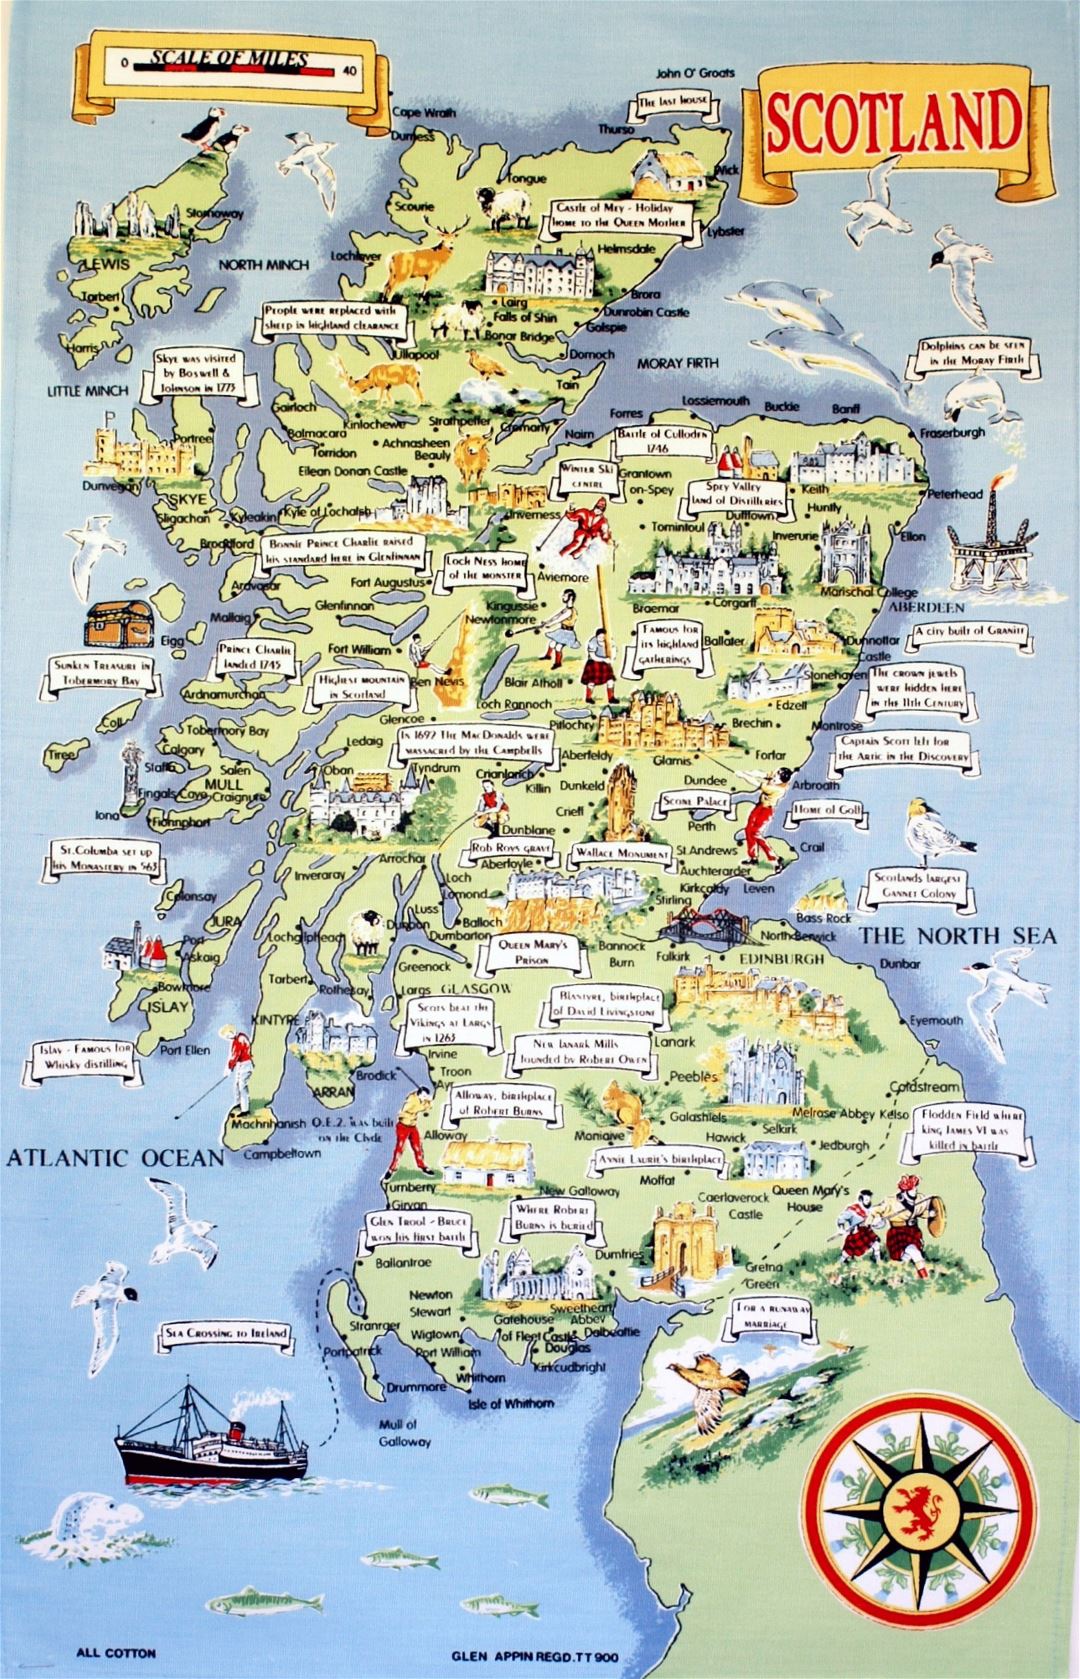 large-tourist-illustrated-map-of-scotland-scotland-united-kingdom-europe-mapsland-maps